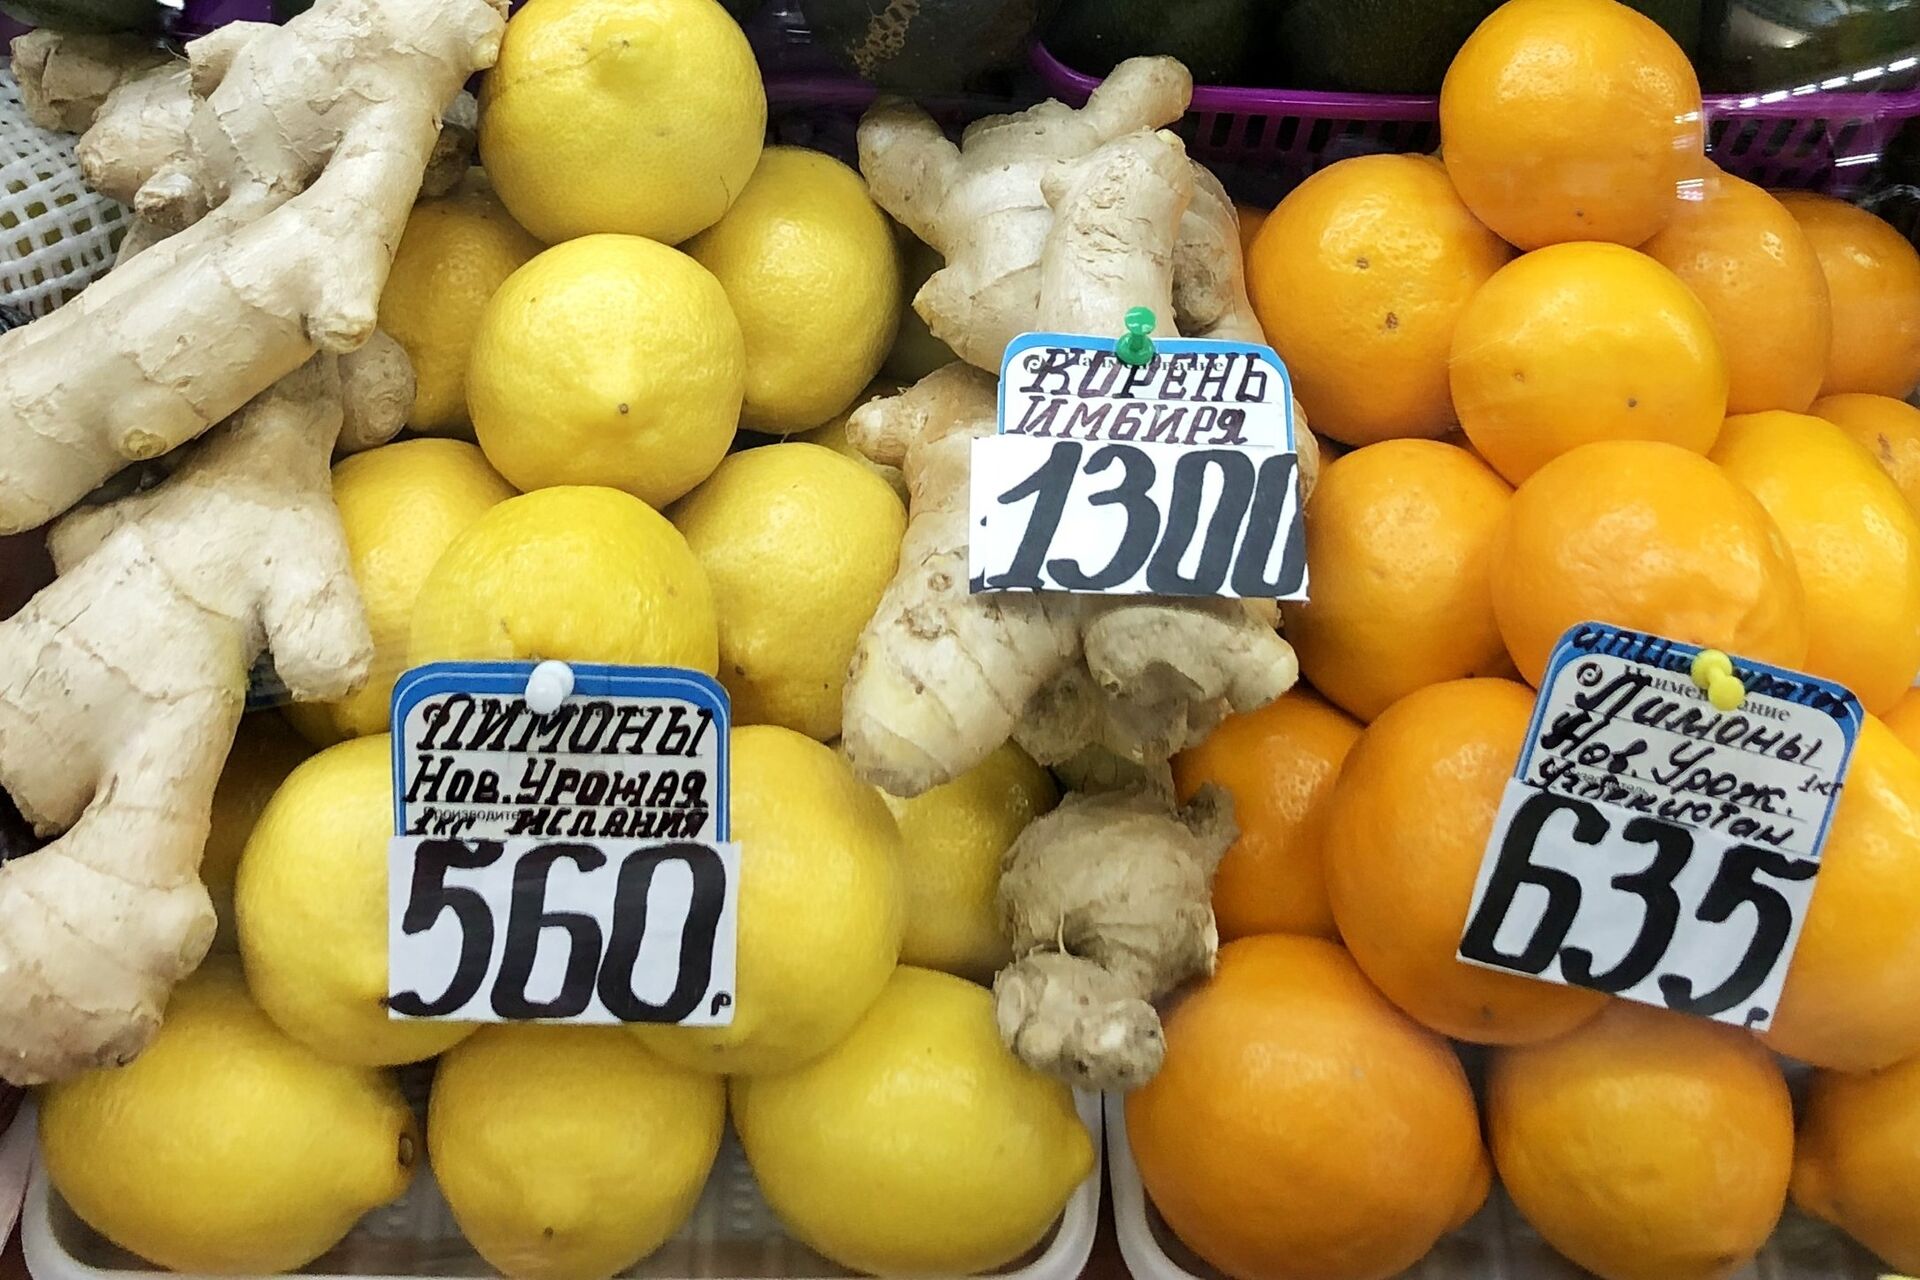 %Продажа имбиря и лимонов в магазинах - ПРАЙМ, 1920, 30.09.2021